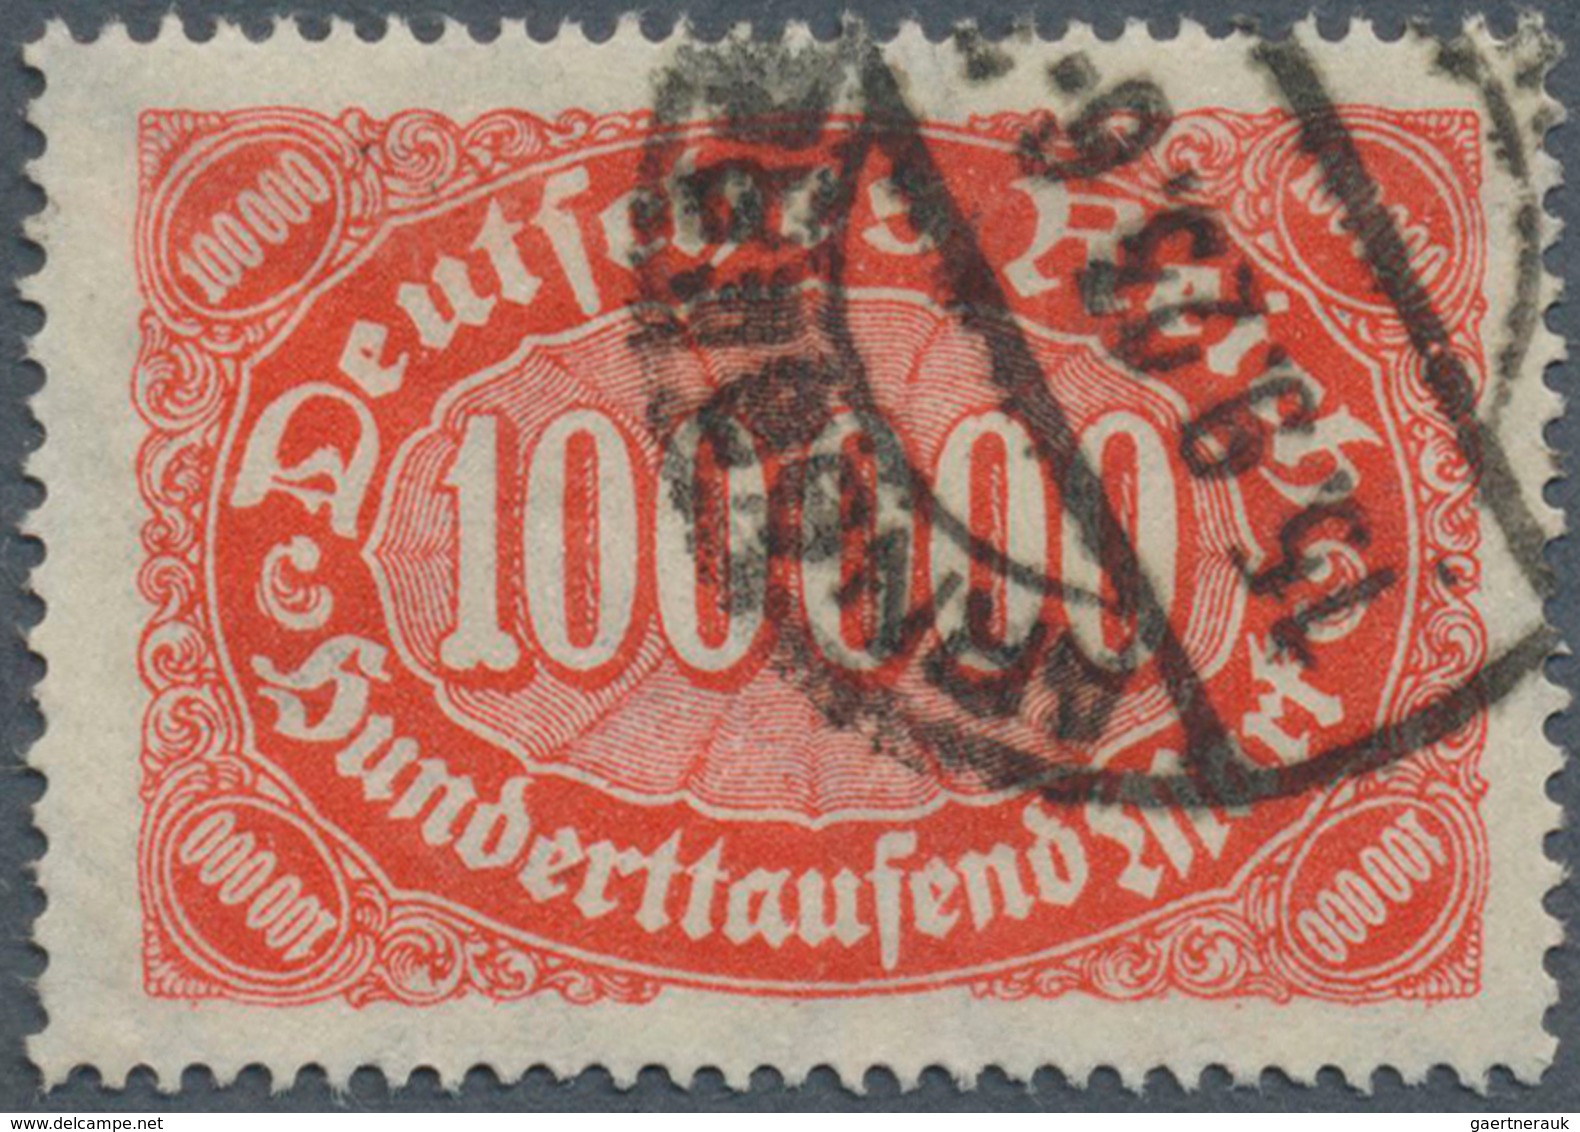 18002 Deutsches Reich - Inflation: 1923, 100000 M., Ziffer Im Queroval Mit Plattenfehler "f" Statt "s" In - Lettres & Documents